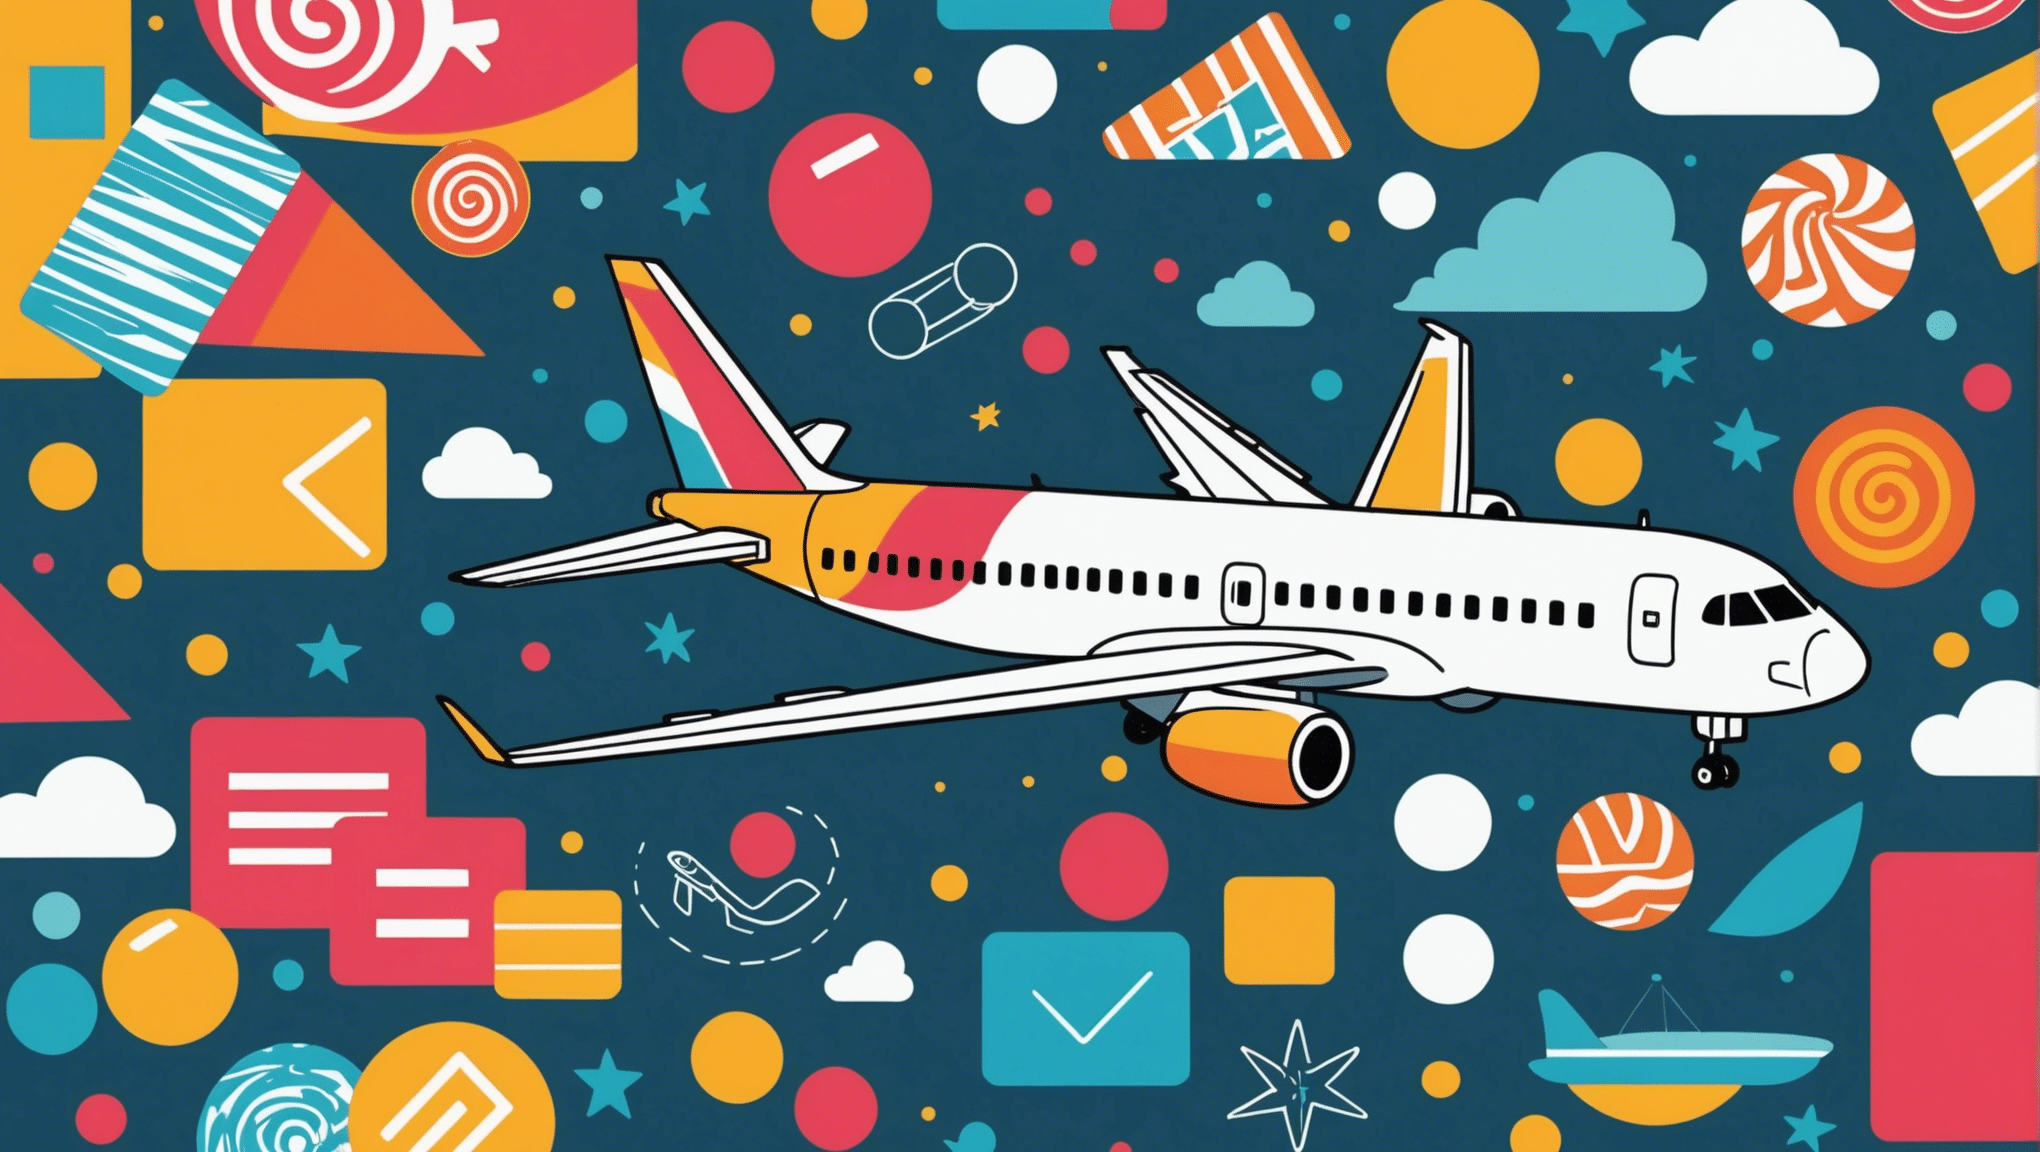 découvrez comment trouver le moment idéal pour acheter un billet d'avion et économiser sur vos prochains voyages avec nos conseils pratiques.